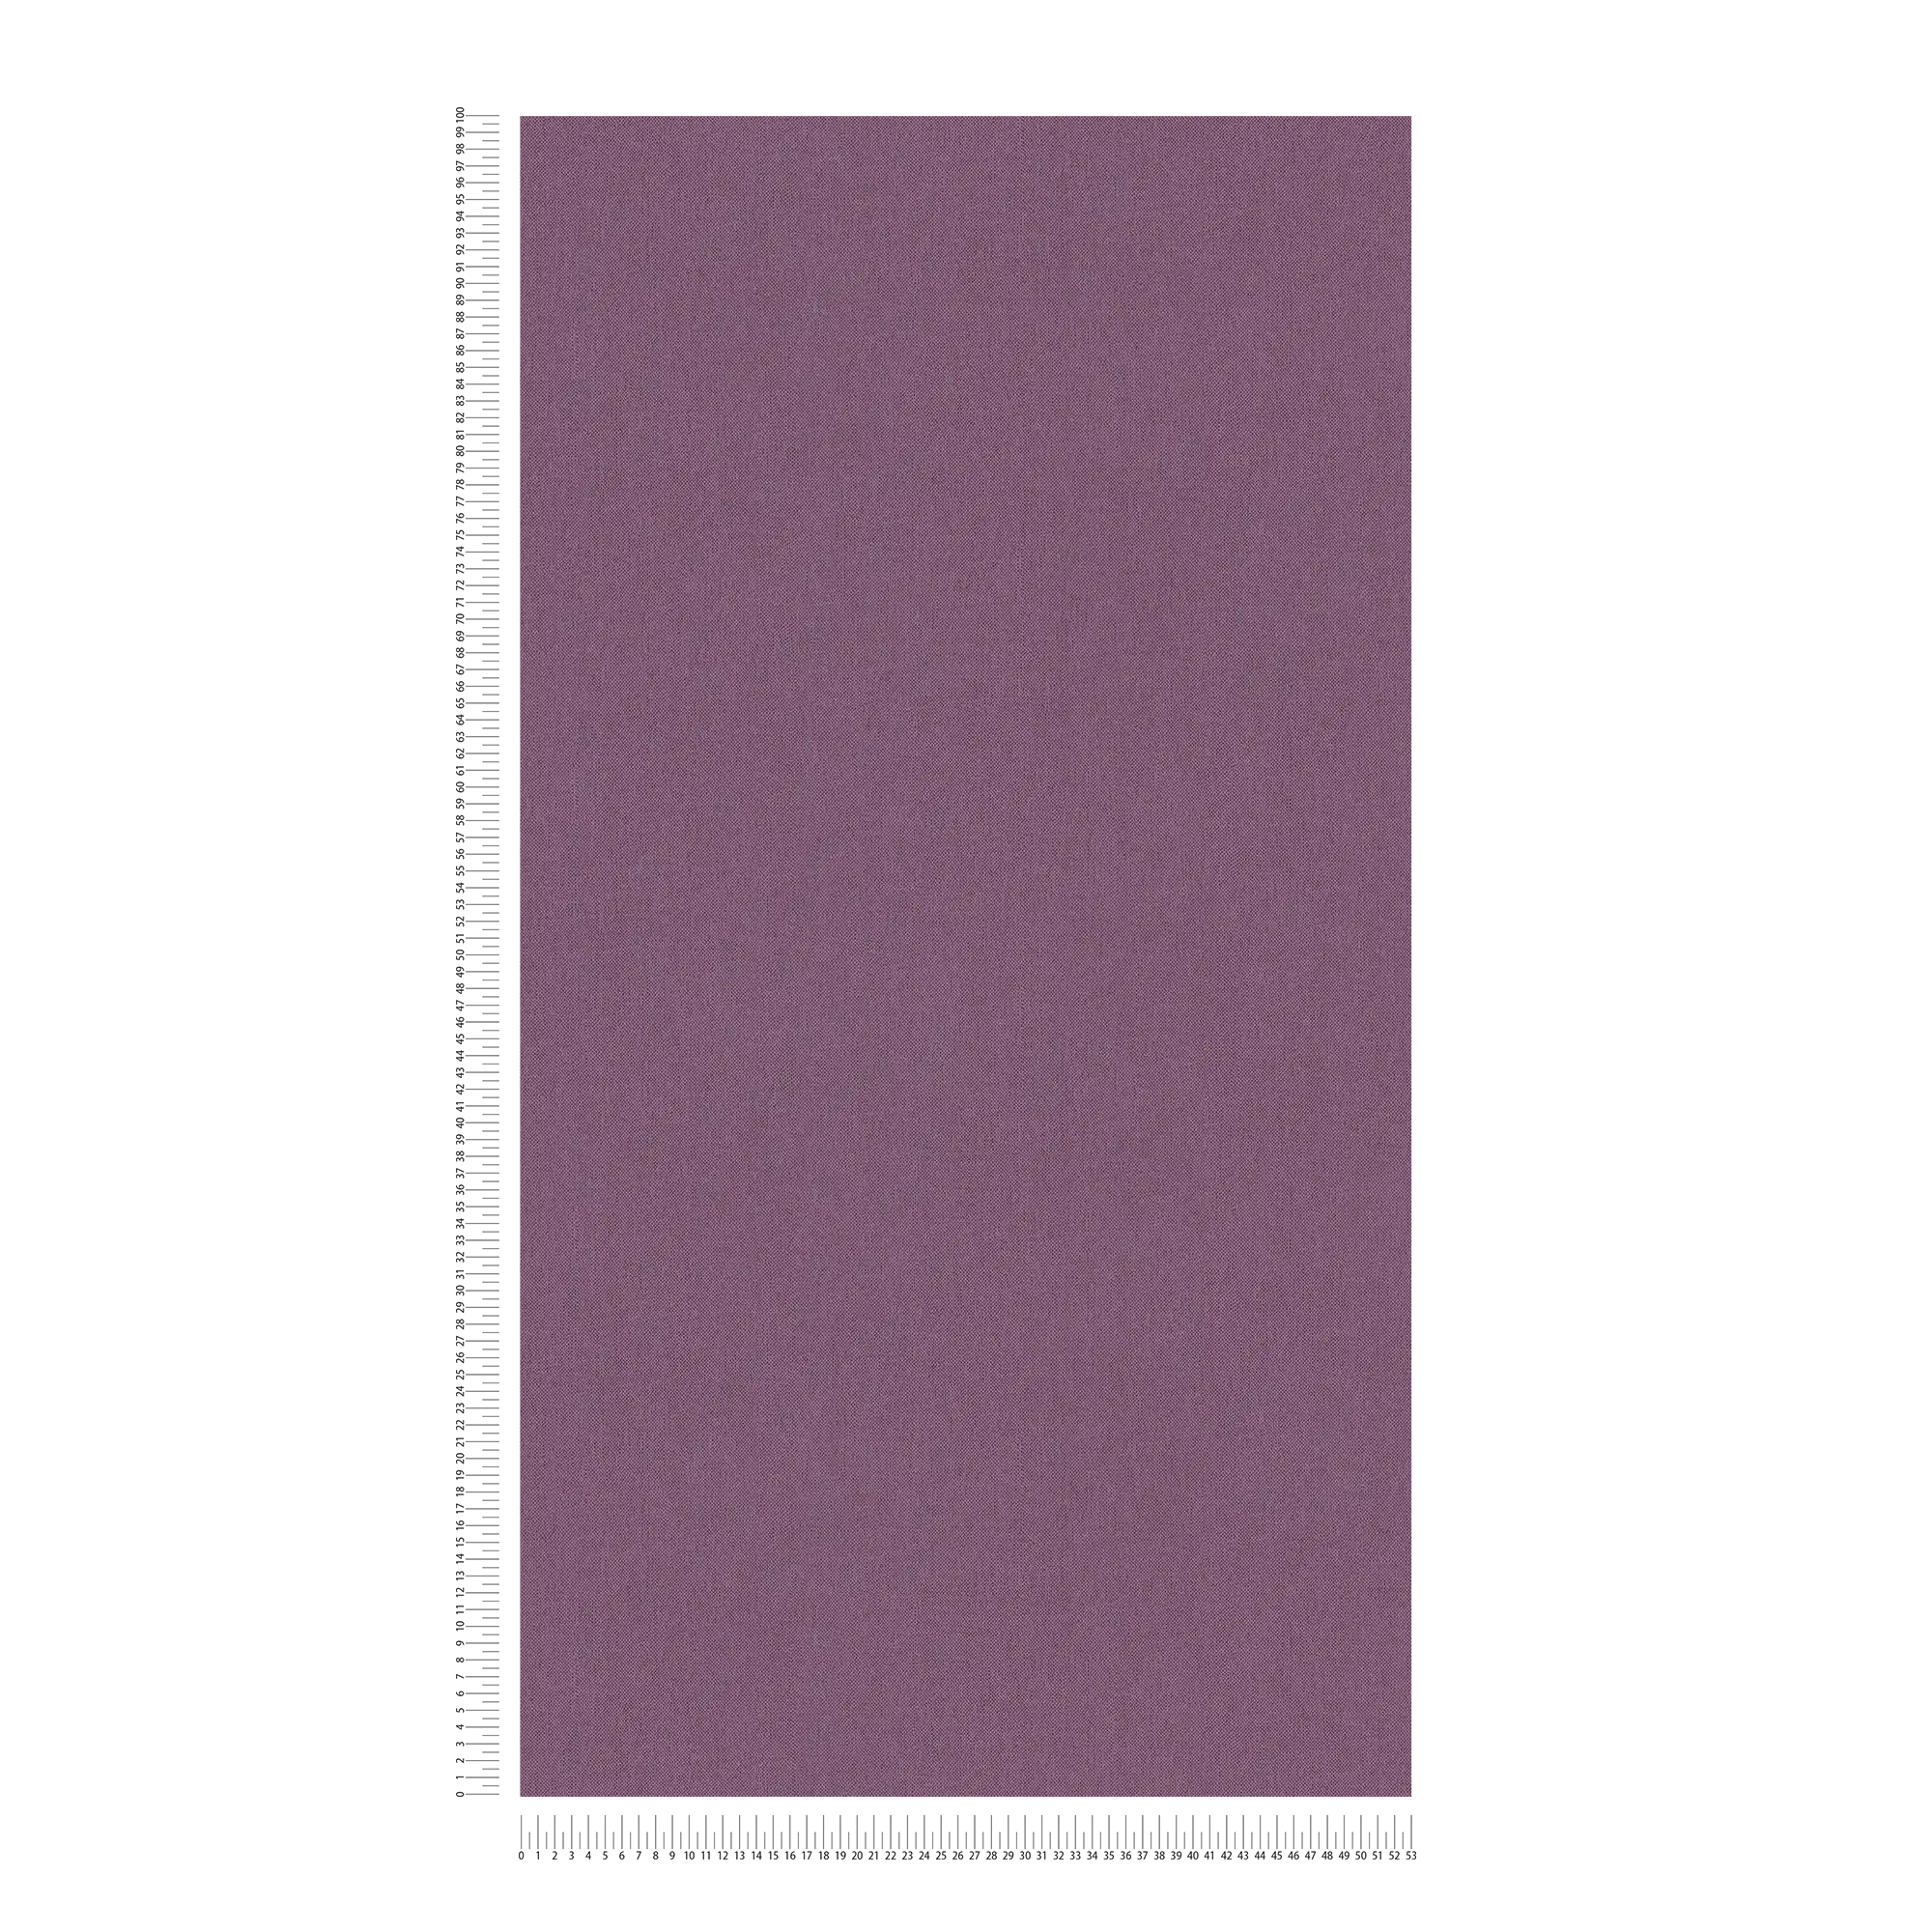             Purple wallpaper plain, matte textile look & fabric texture
        